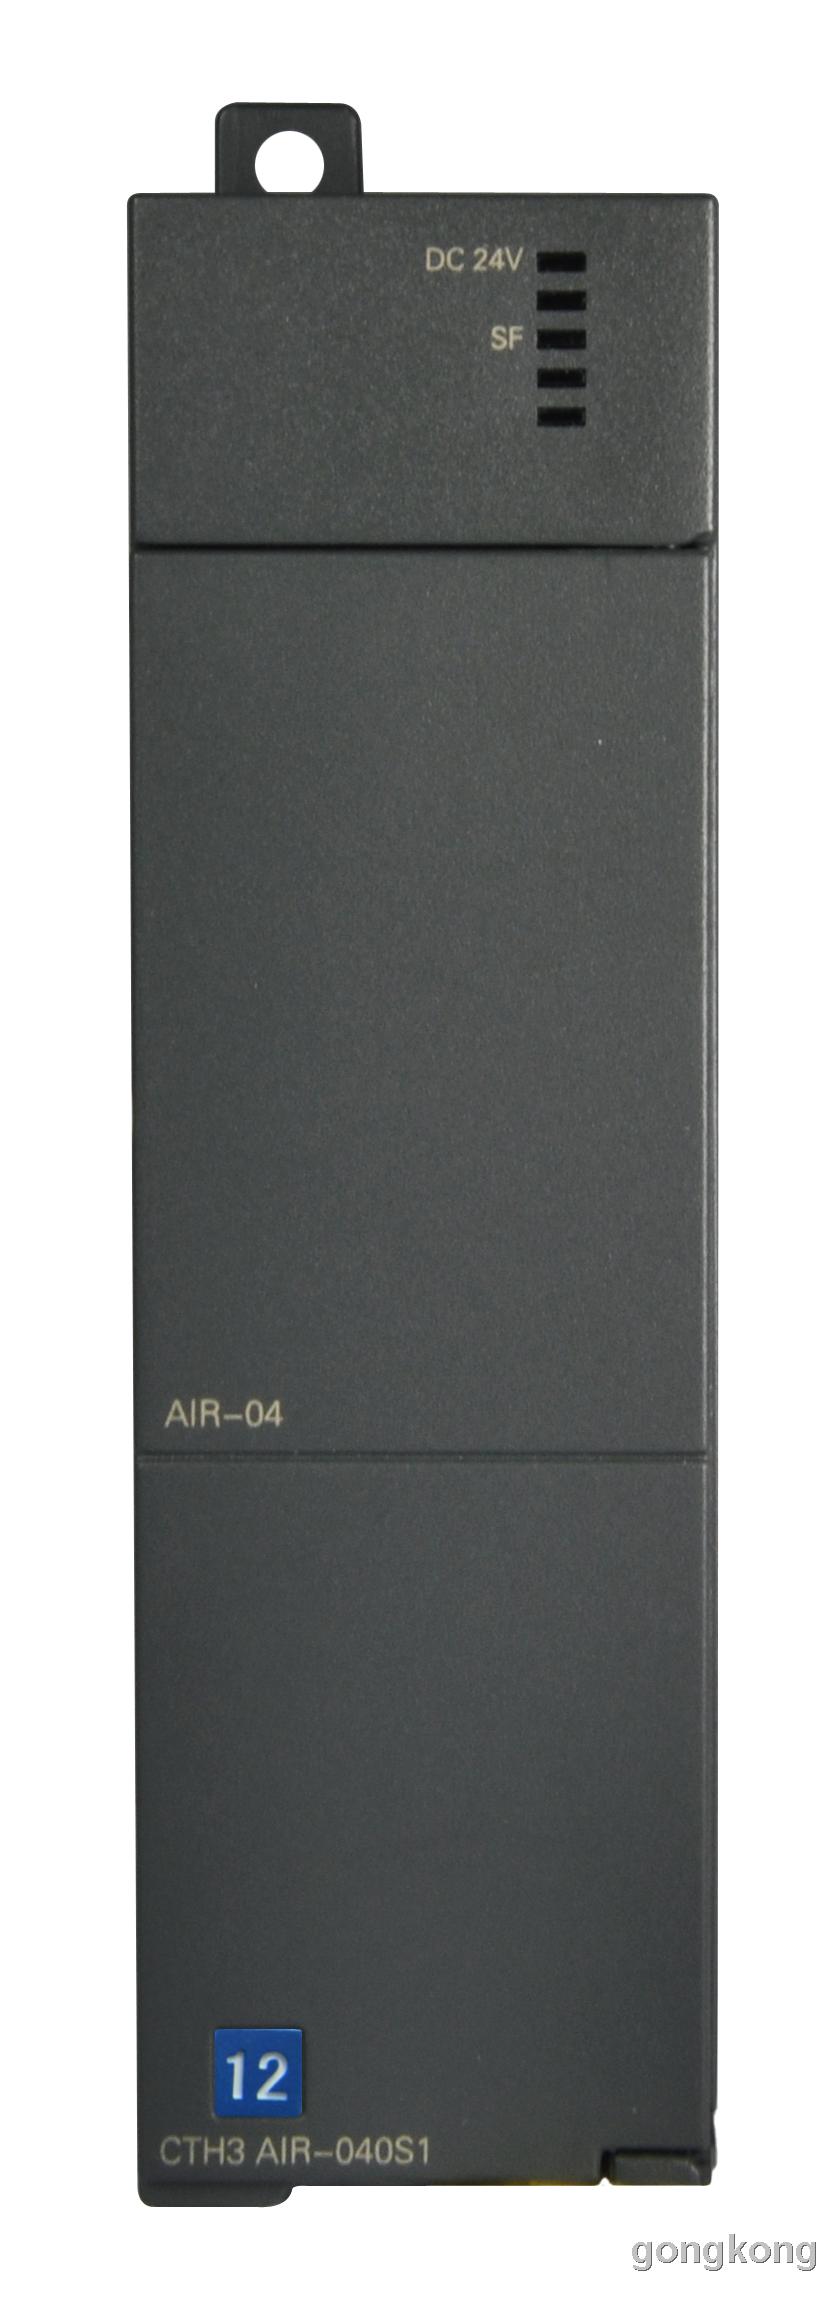 合信 AIR-04热电阻模块\AIR-08热电阻模块